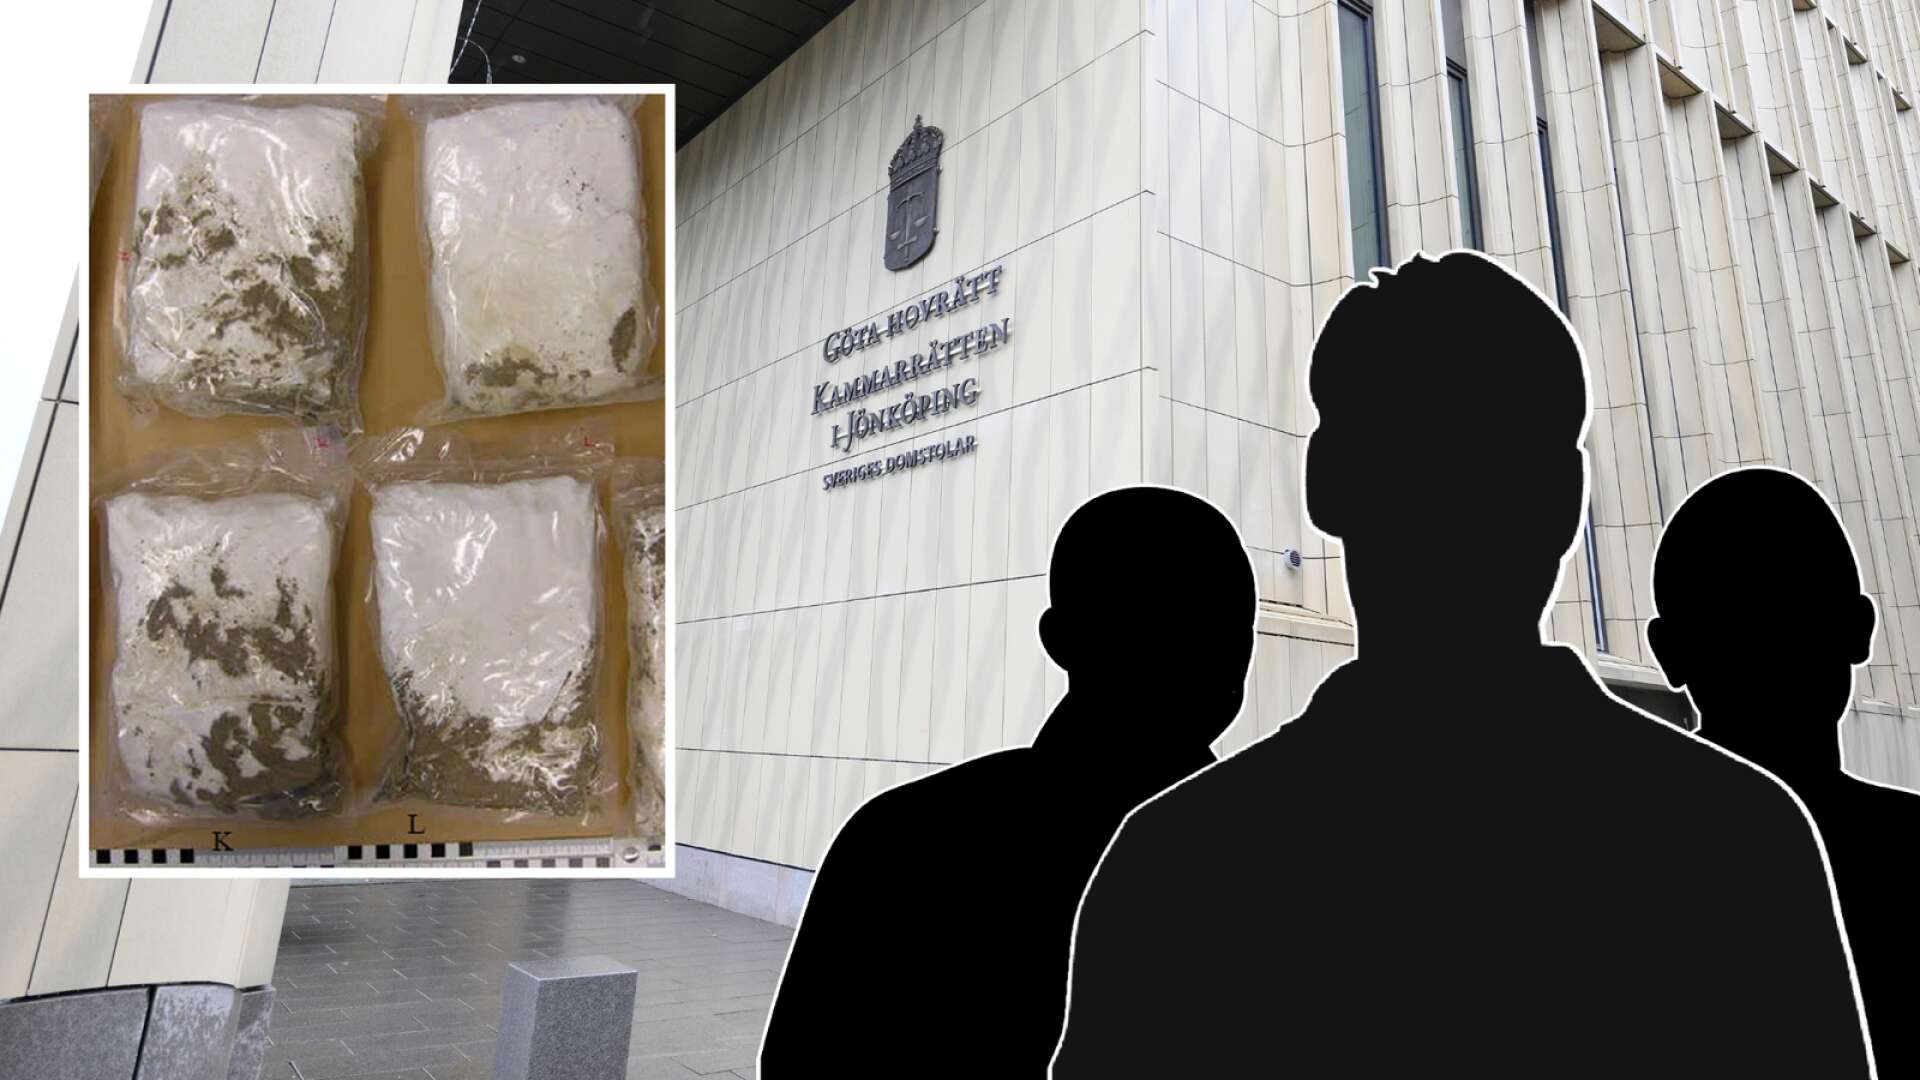 Dom i ärendet ”Hydra” • Polisen hittade 13 kilo amfetamin